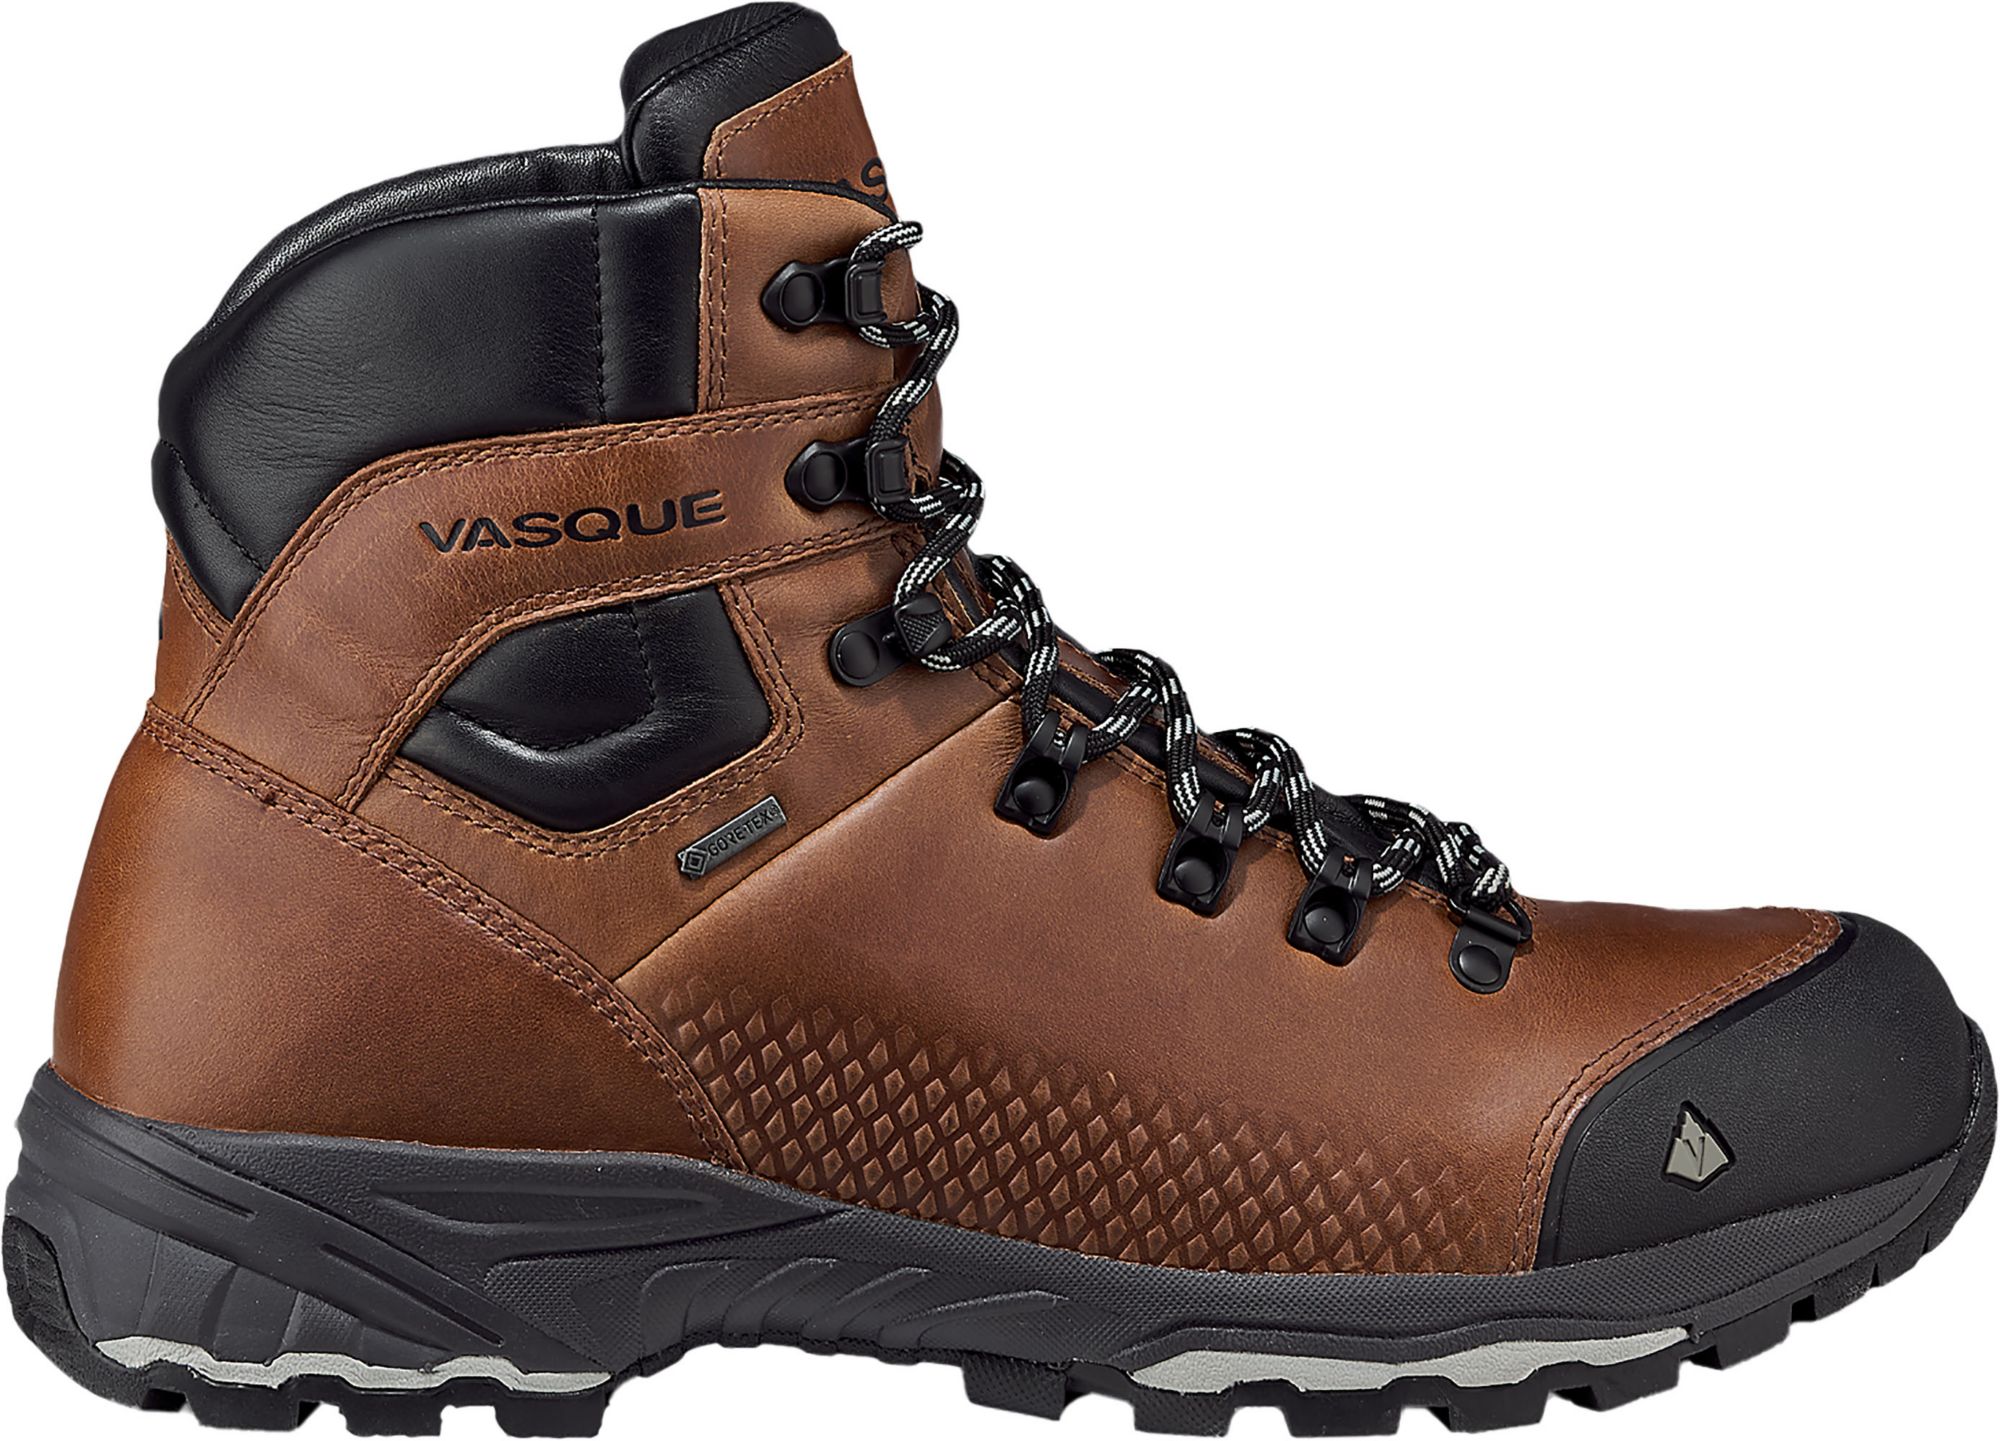 Photos - Trekking Shoes Vasque Men's St. Elias FG GTX Hiking Boots, Size 8, Cognac | Father's Day 